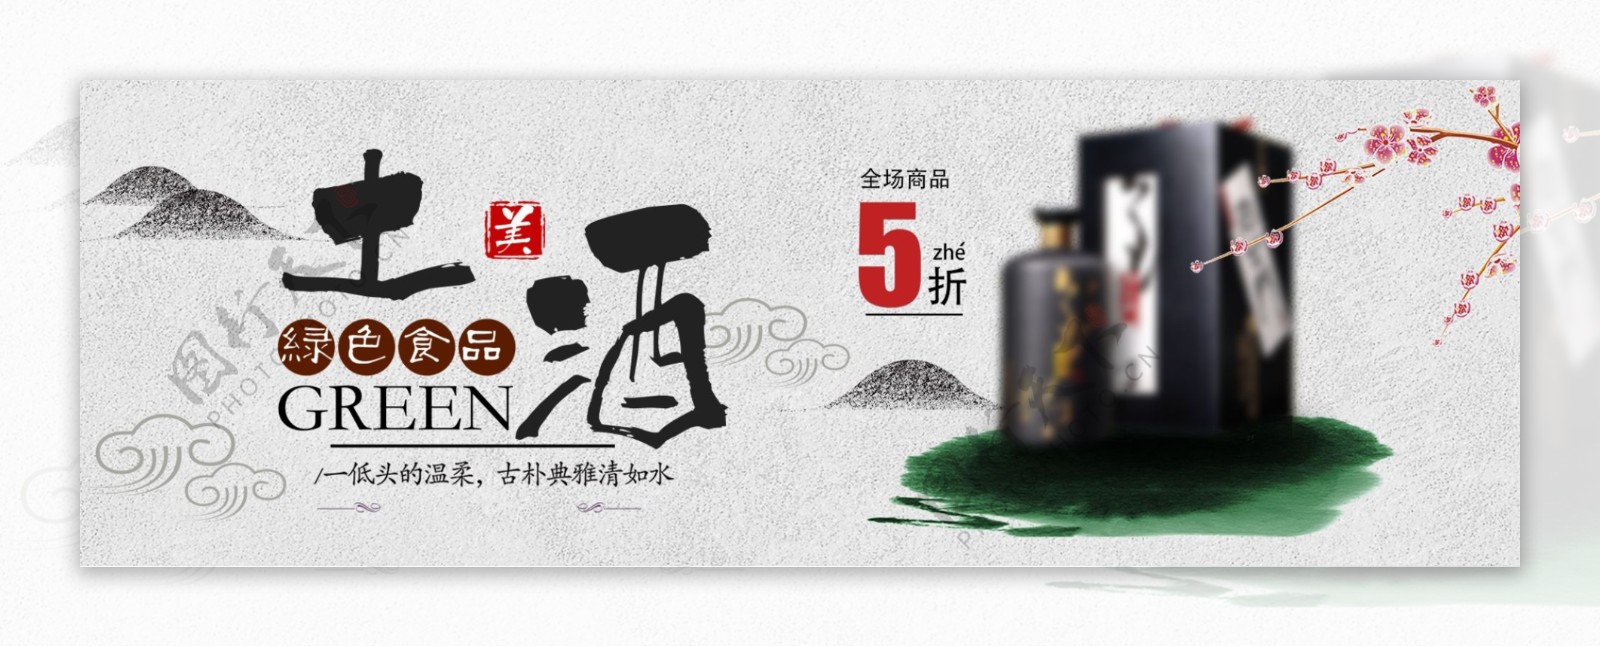 灰色中国风土酒梅花老酒电商banner